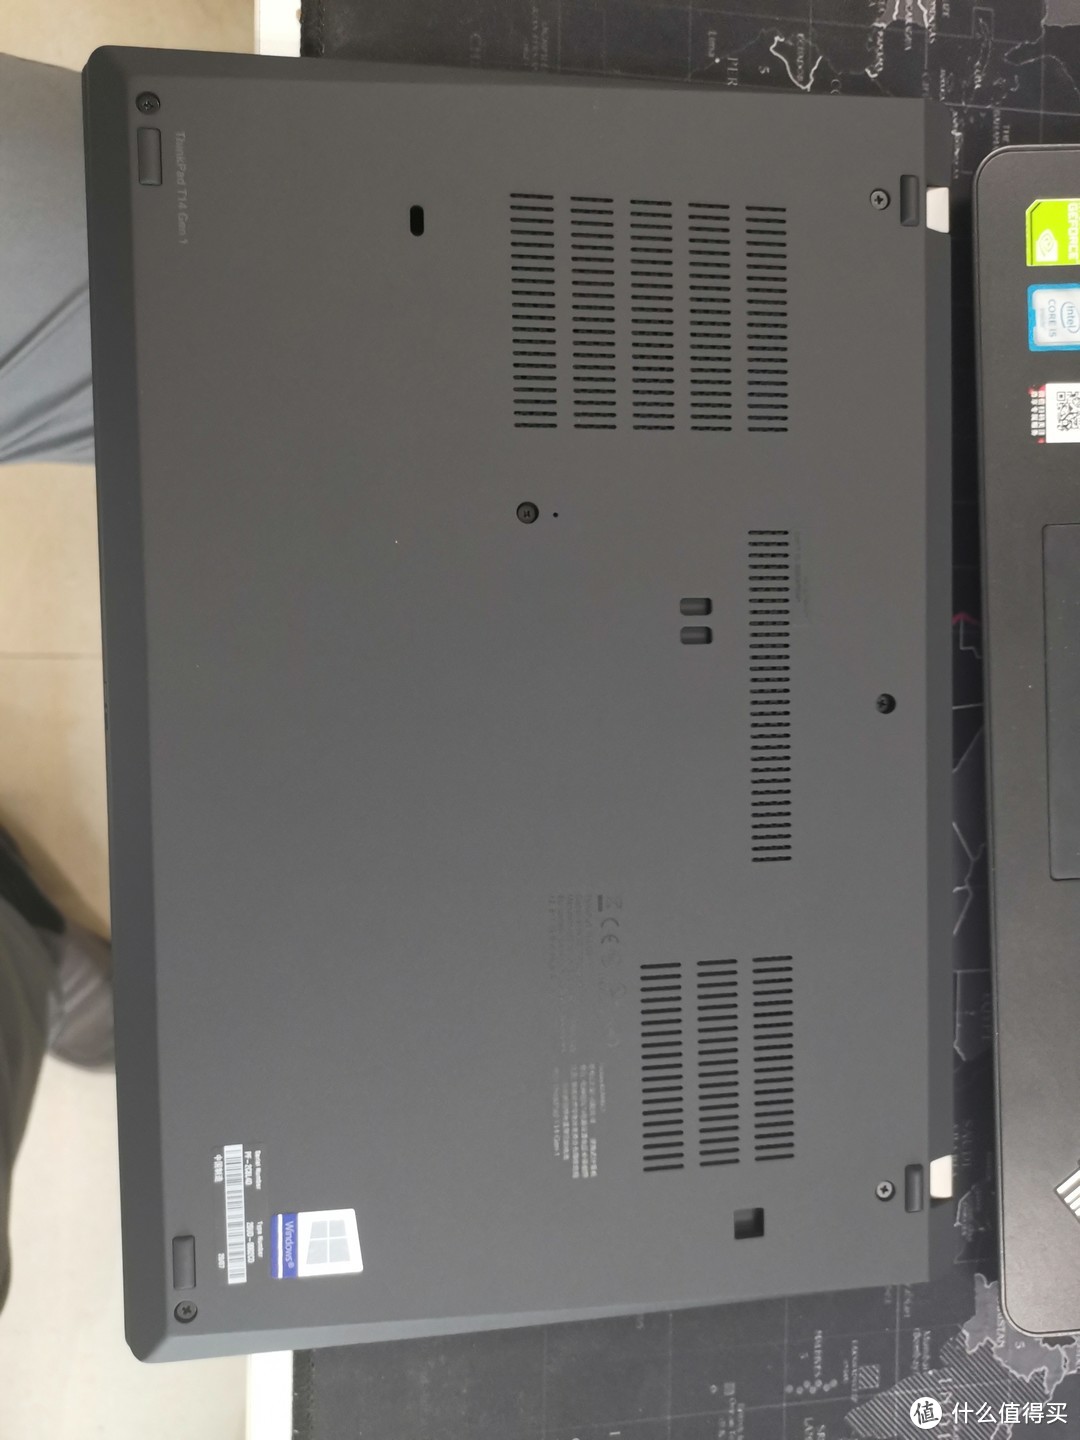 ThinkPad T14 amd 4750U笔记本开箱